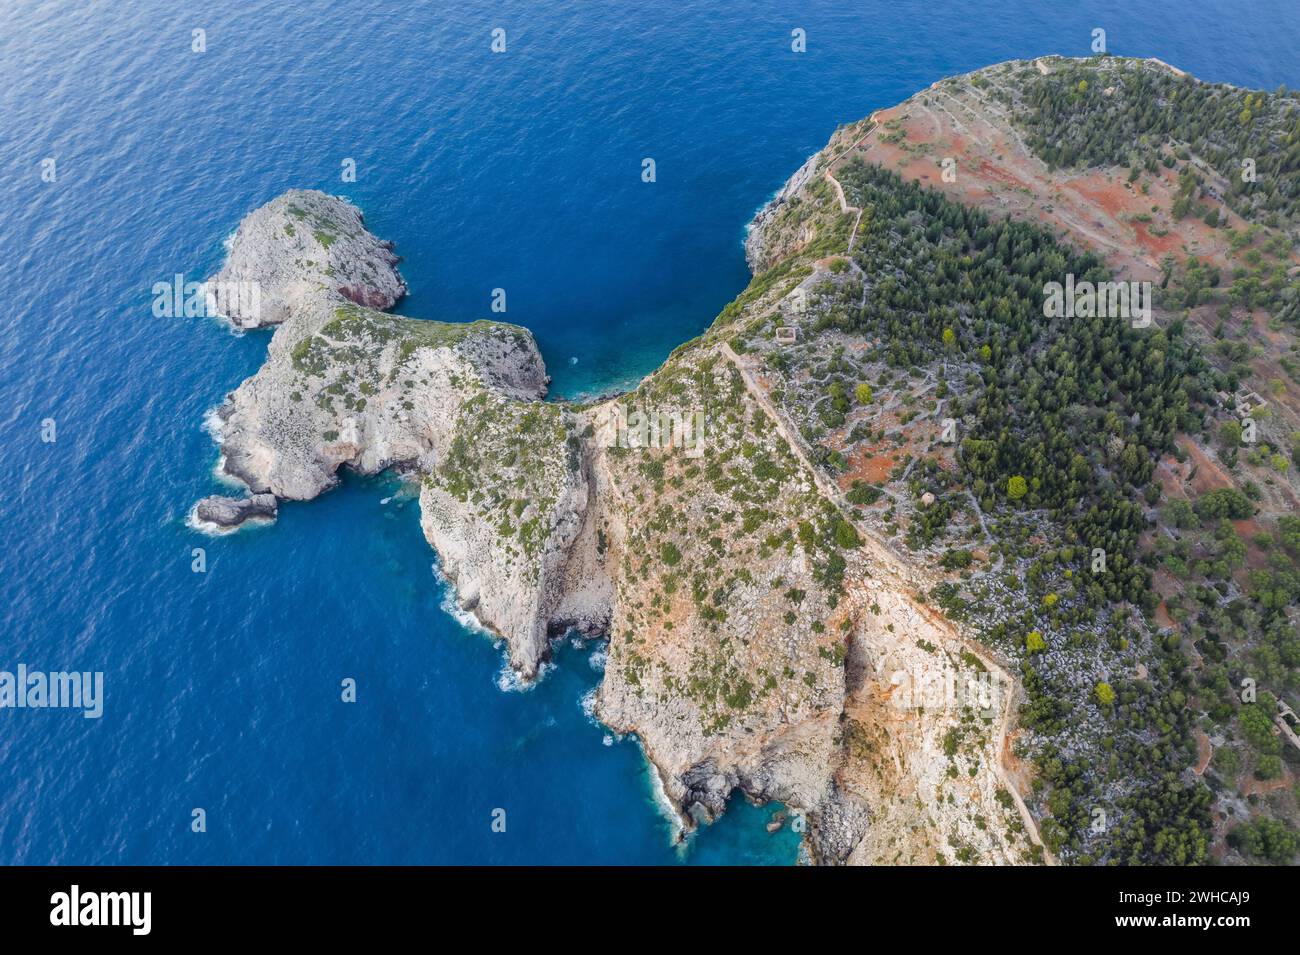 Vue aérienne de la péninsule d'Assos et fantastique eau de mer Ionienne turquoise et bleue. Vue de dessus, paysage d'été de destination de voyage célèbre et extrêmement populaire à Céphalonie, Grèce. Banque D'Images